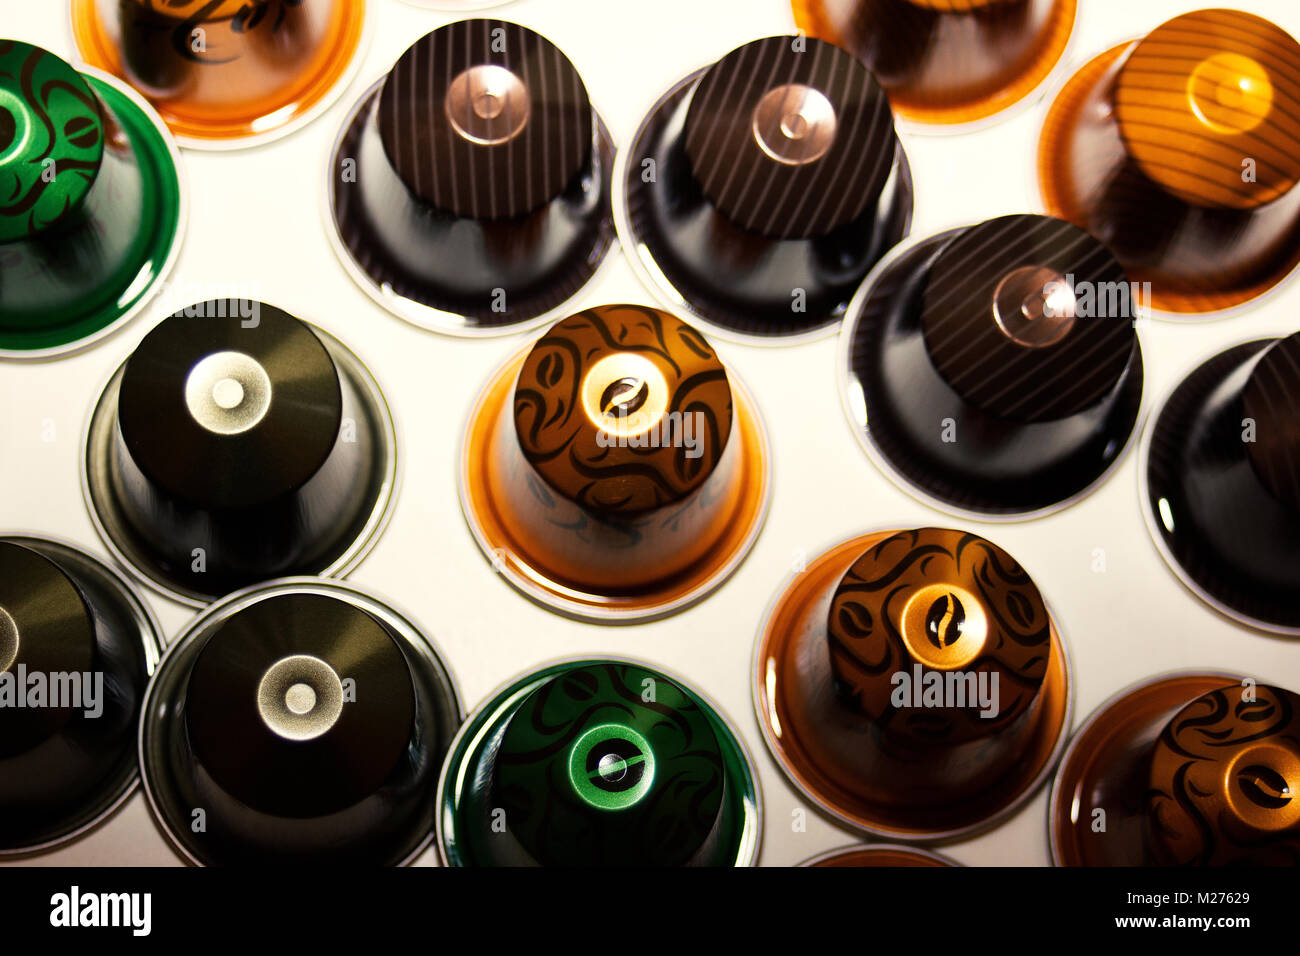 Divers nouveaux 'limited edition' dosettes nespresso colorés/ capsules sur fond blanc Banque D'Images